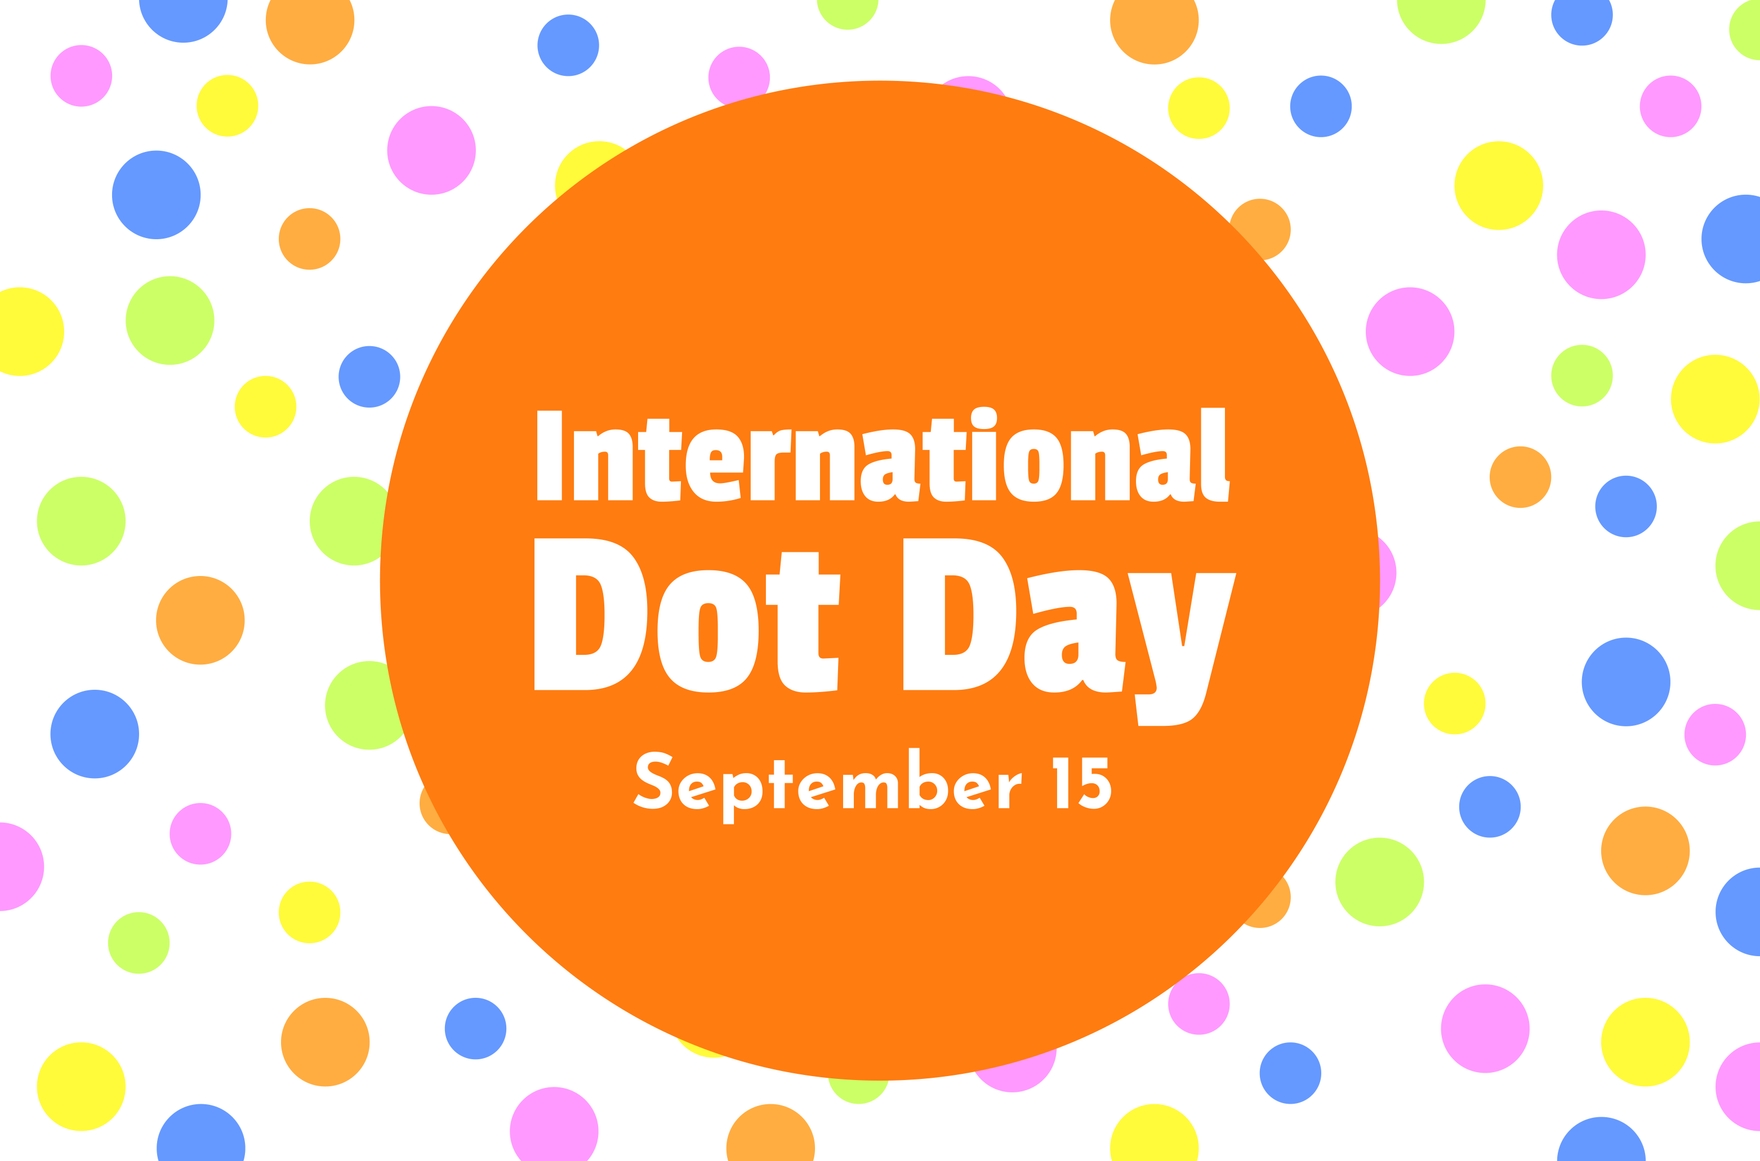 International Dot Day Banner in Illustrator, PSD, EPS, SVG, JPG, PNG